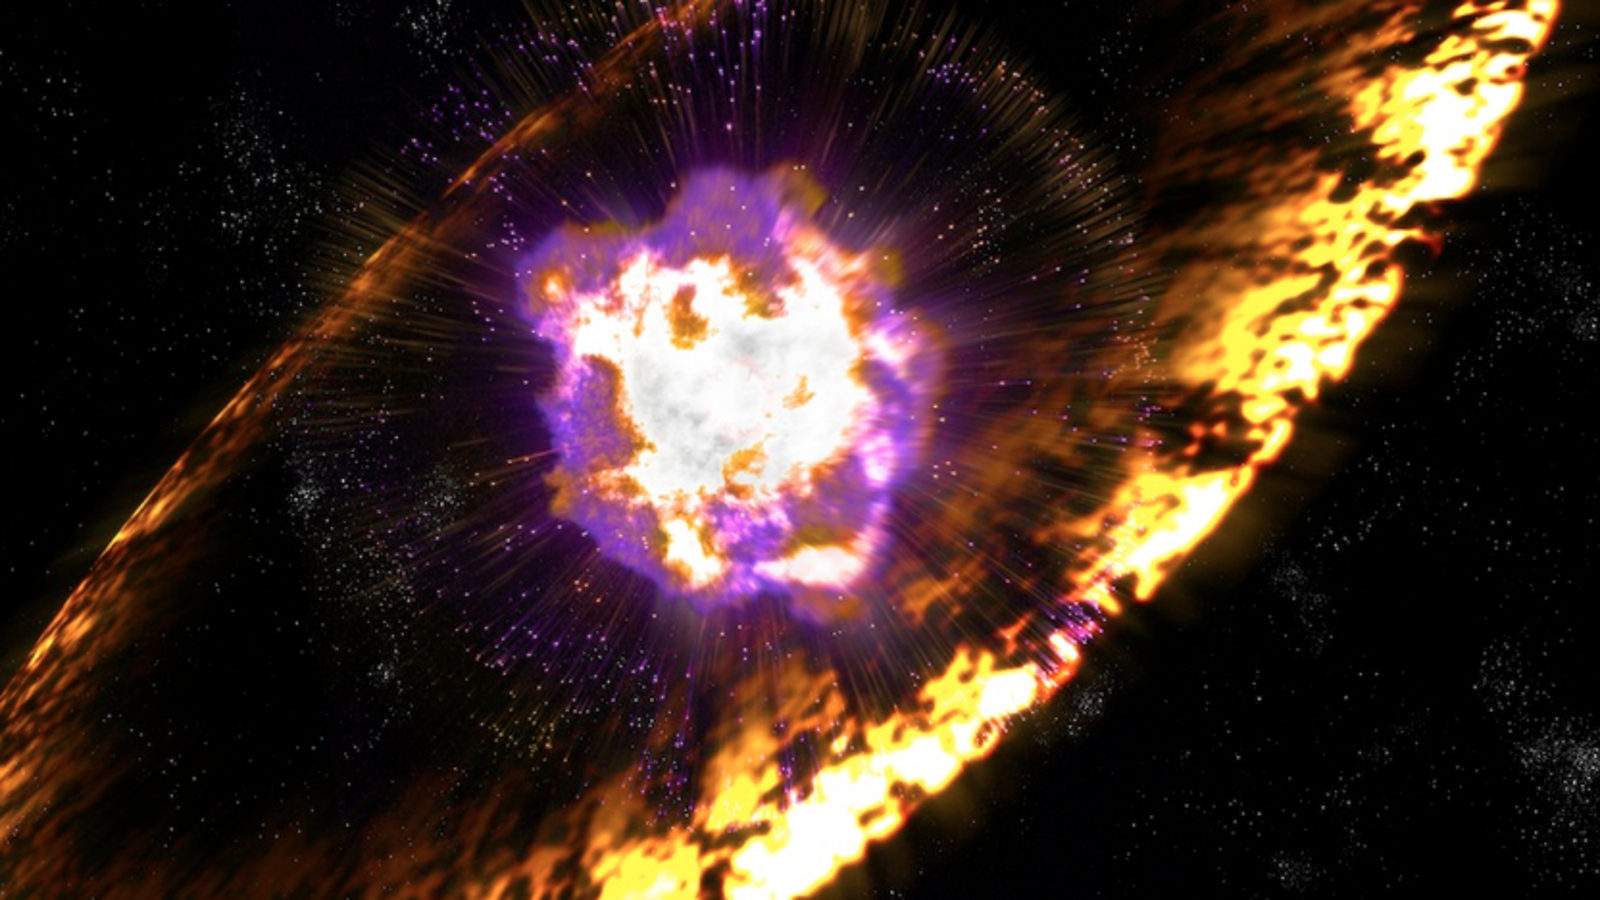 Image of supernova shockwave